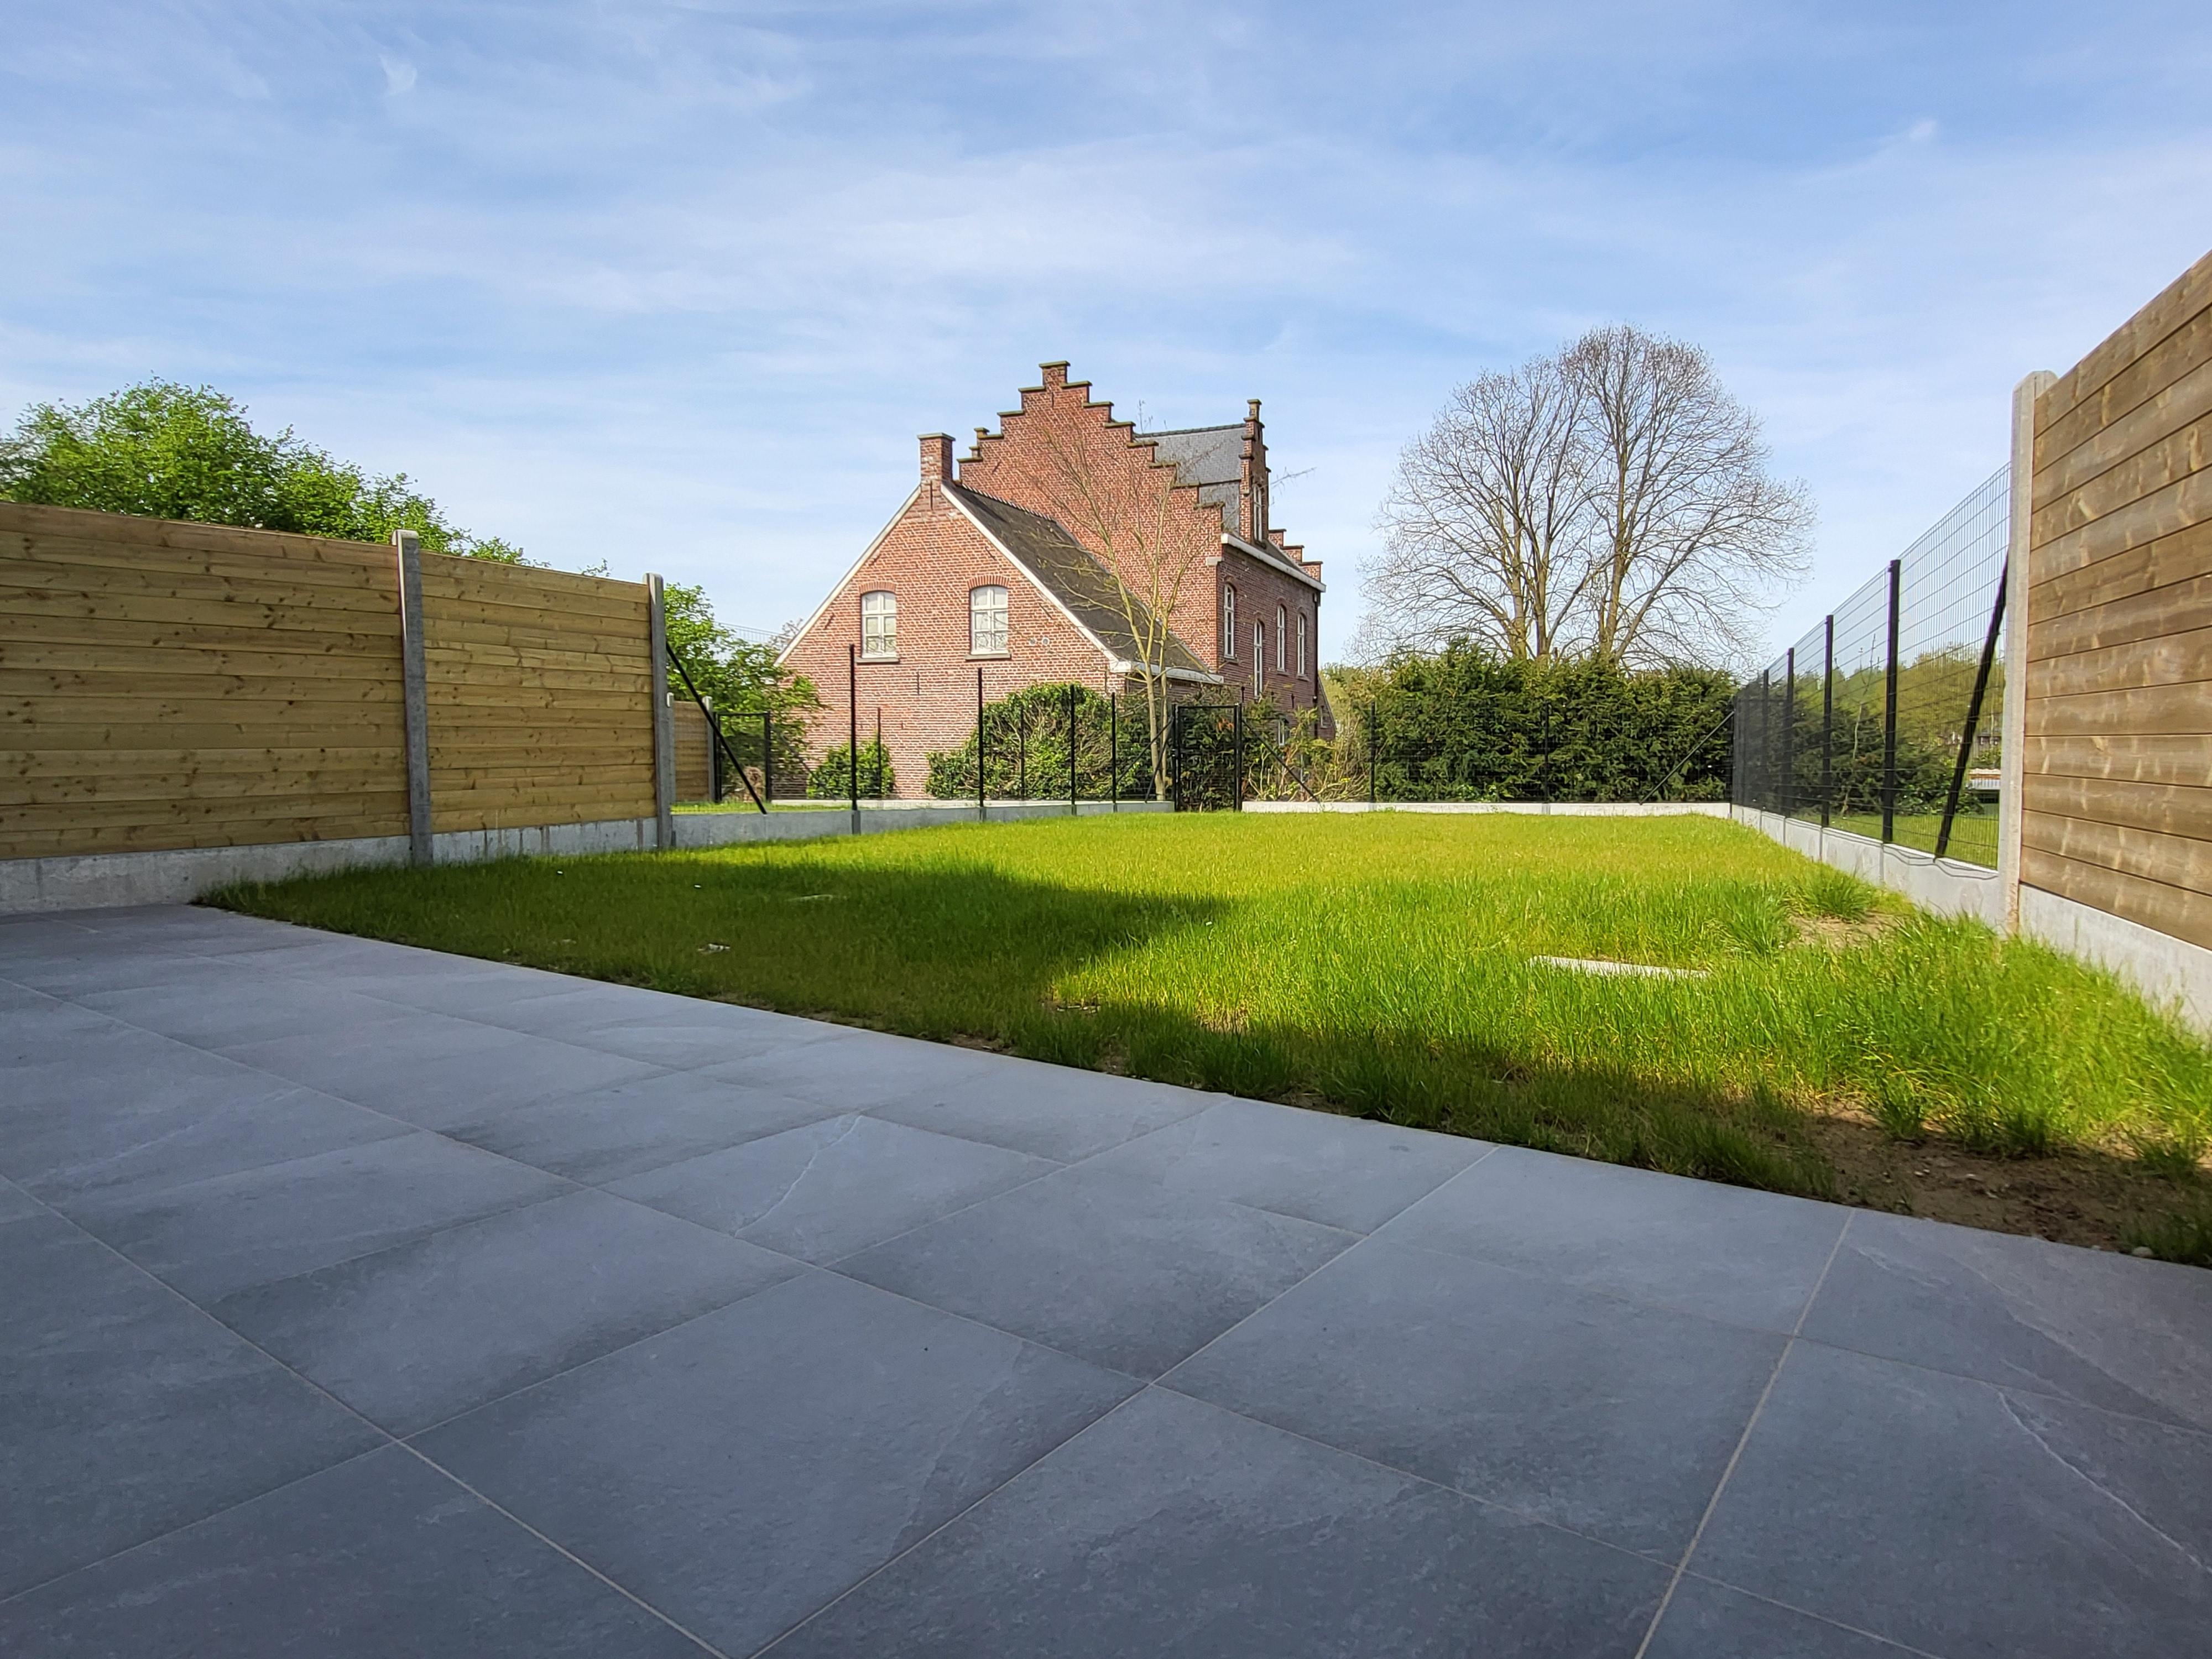  Uiterst energiezuinige BEN nieuwbouw met aangelegde tuin en terras, hartje Vlaamse Ardennen. Aankoop aan 6% btw mogelijk ! foto 17